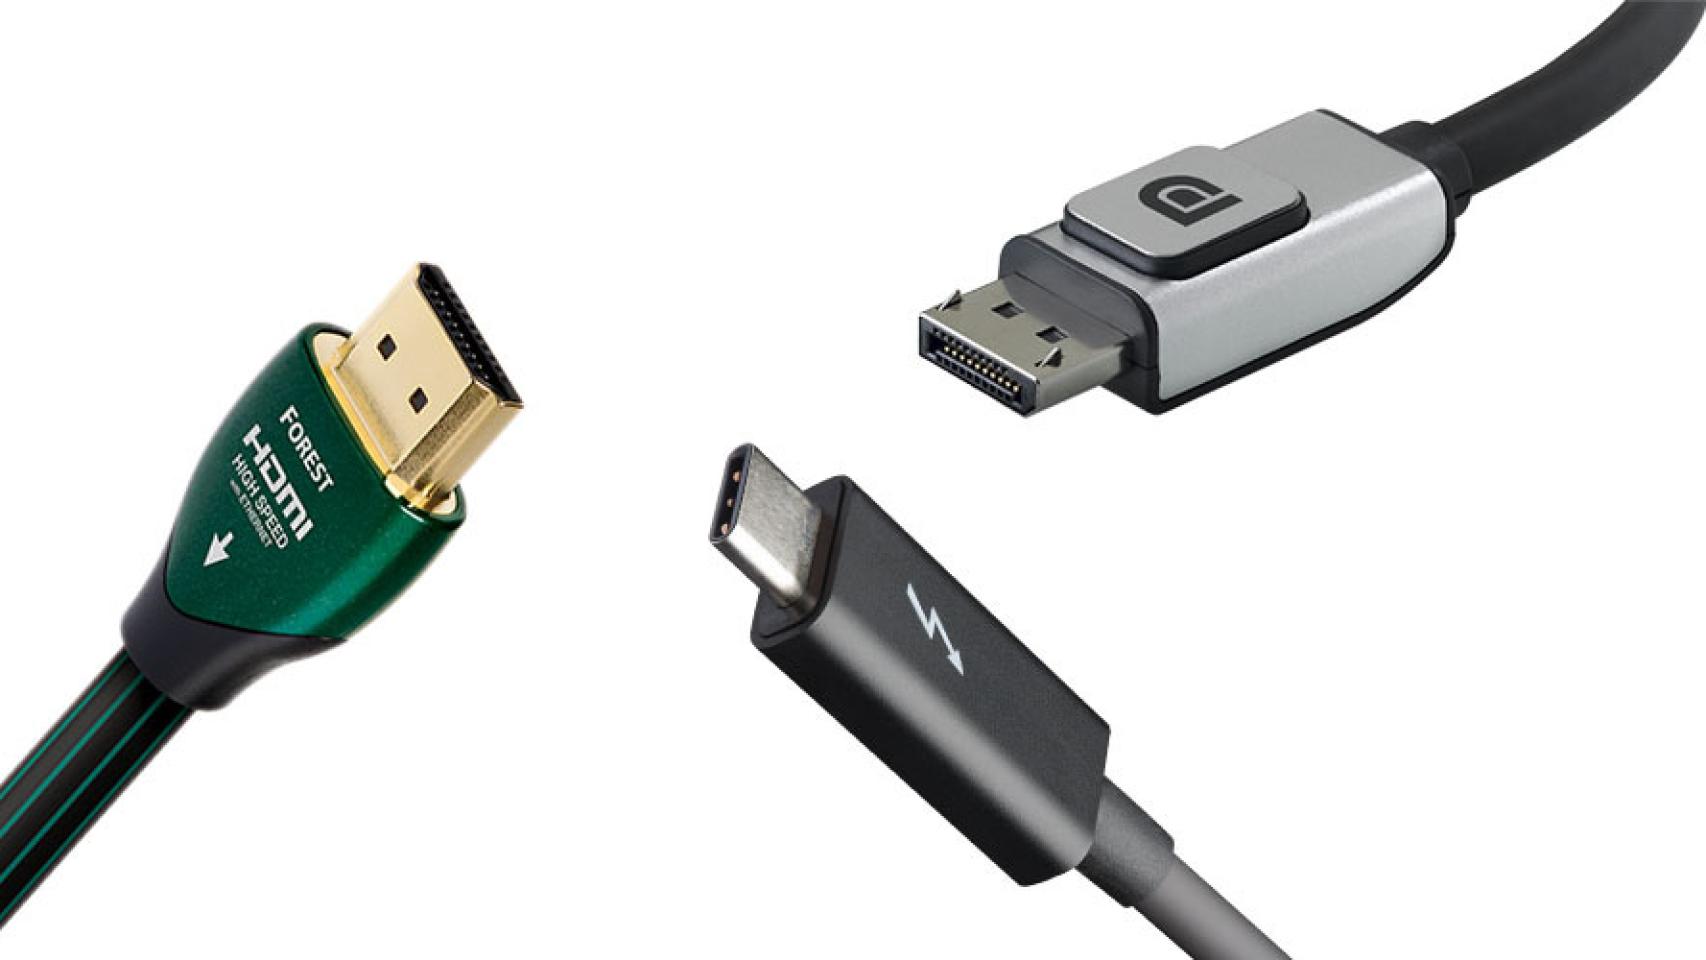 DVI vs HDMI: qué son y cuáles son las diferencias